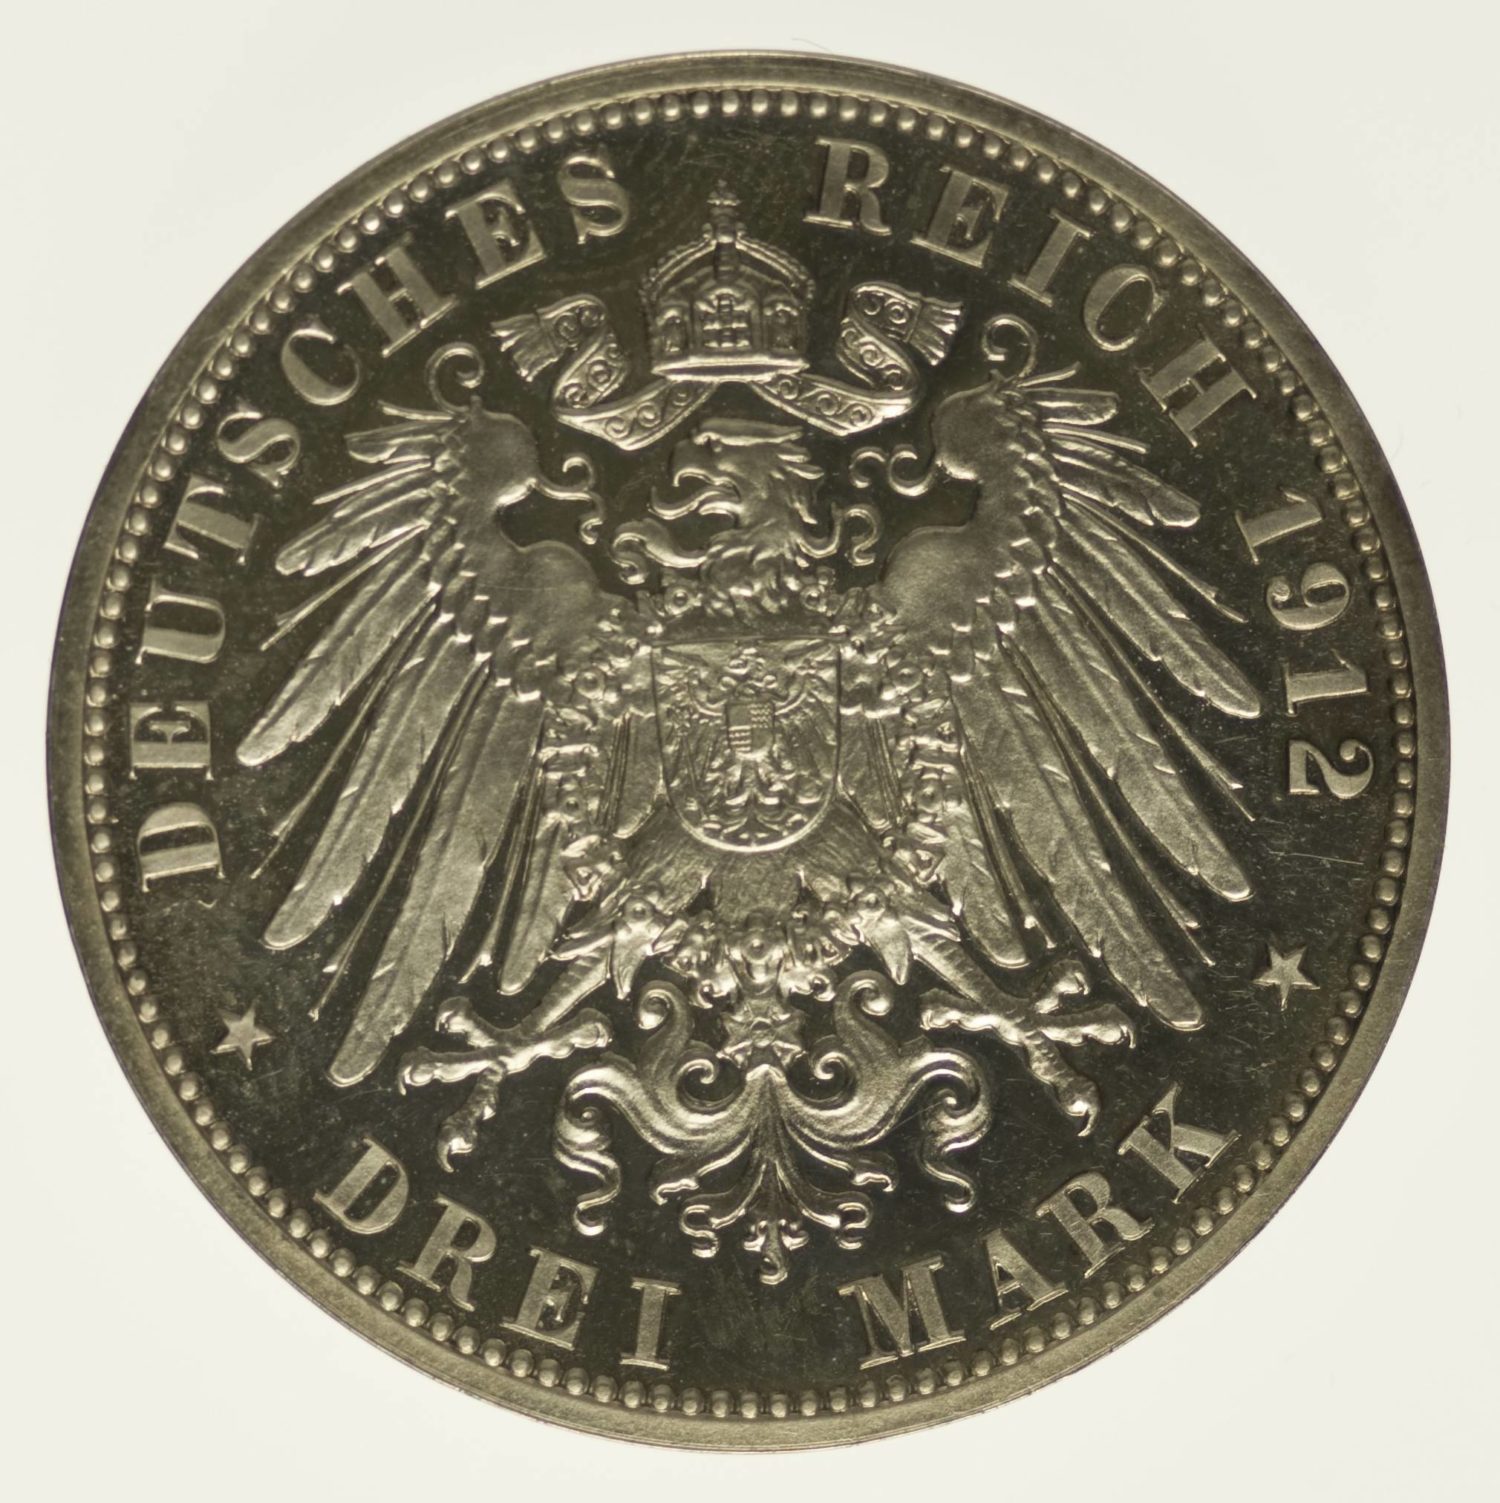 Lübeck Stadtwappen 3 Mark 1912 Silber 15 Gramm fein RAR